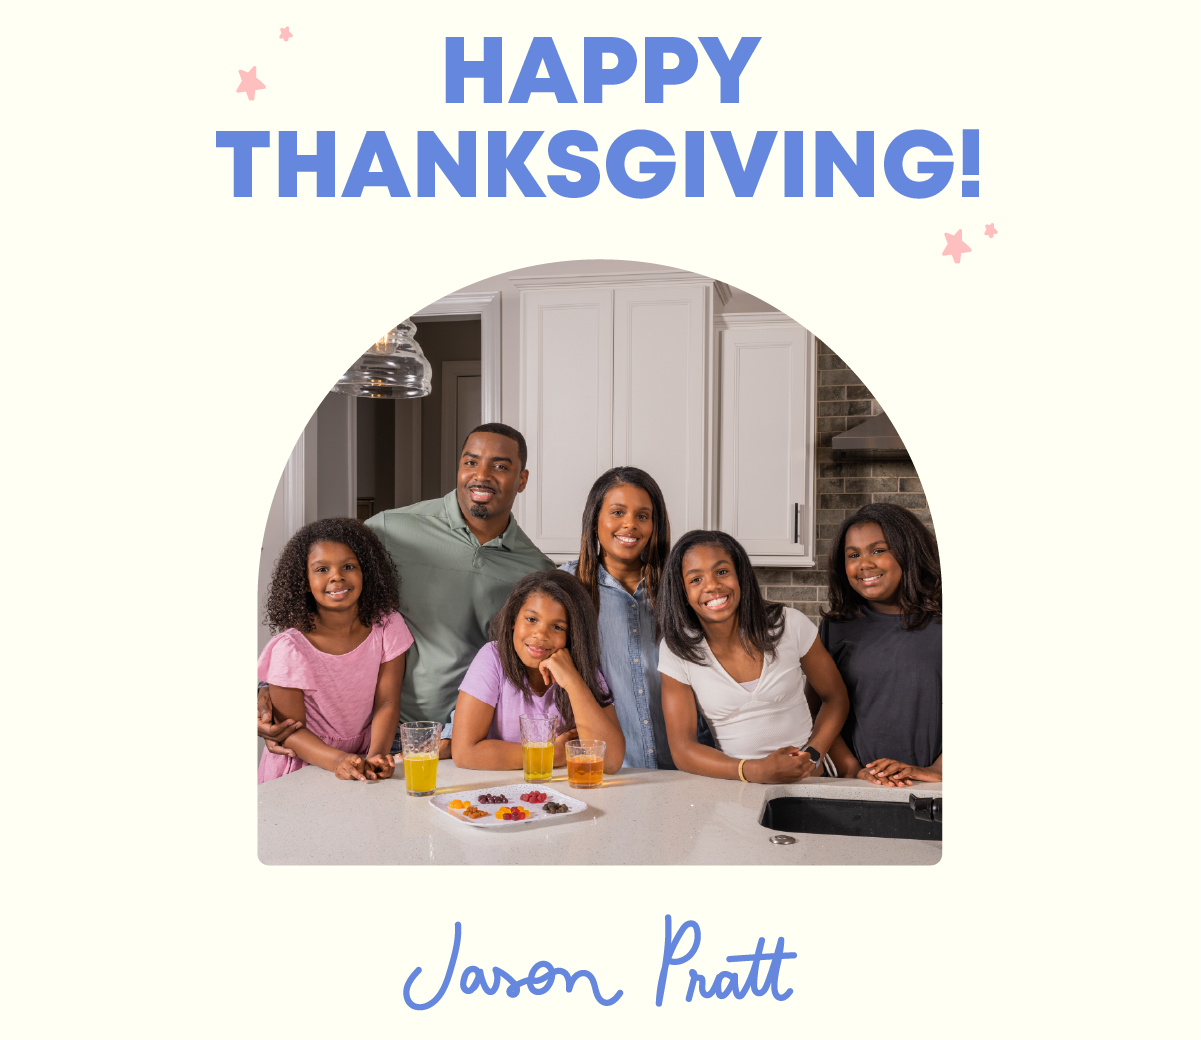 Happy Thanksgiving!  from Jason Pratt, JoySpring Founder